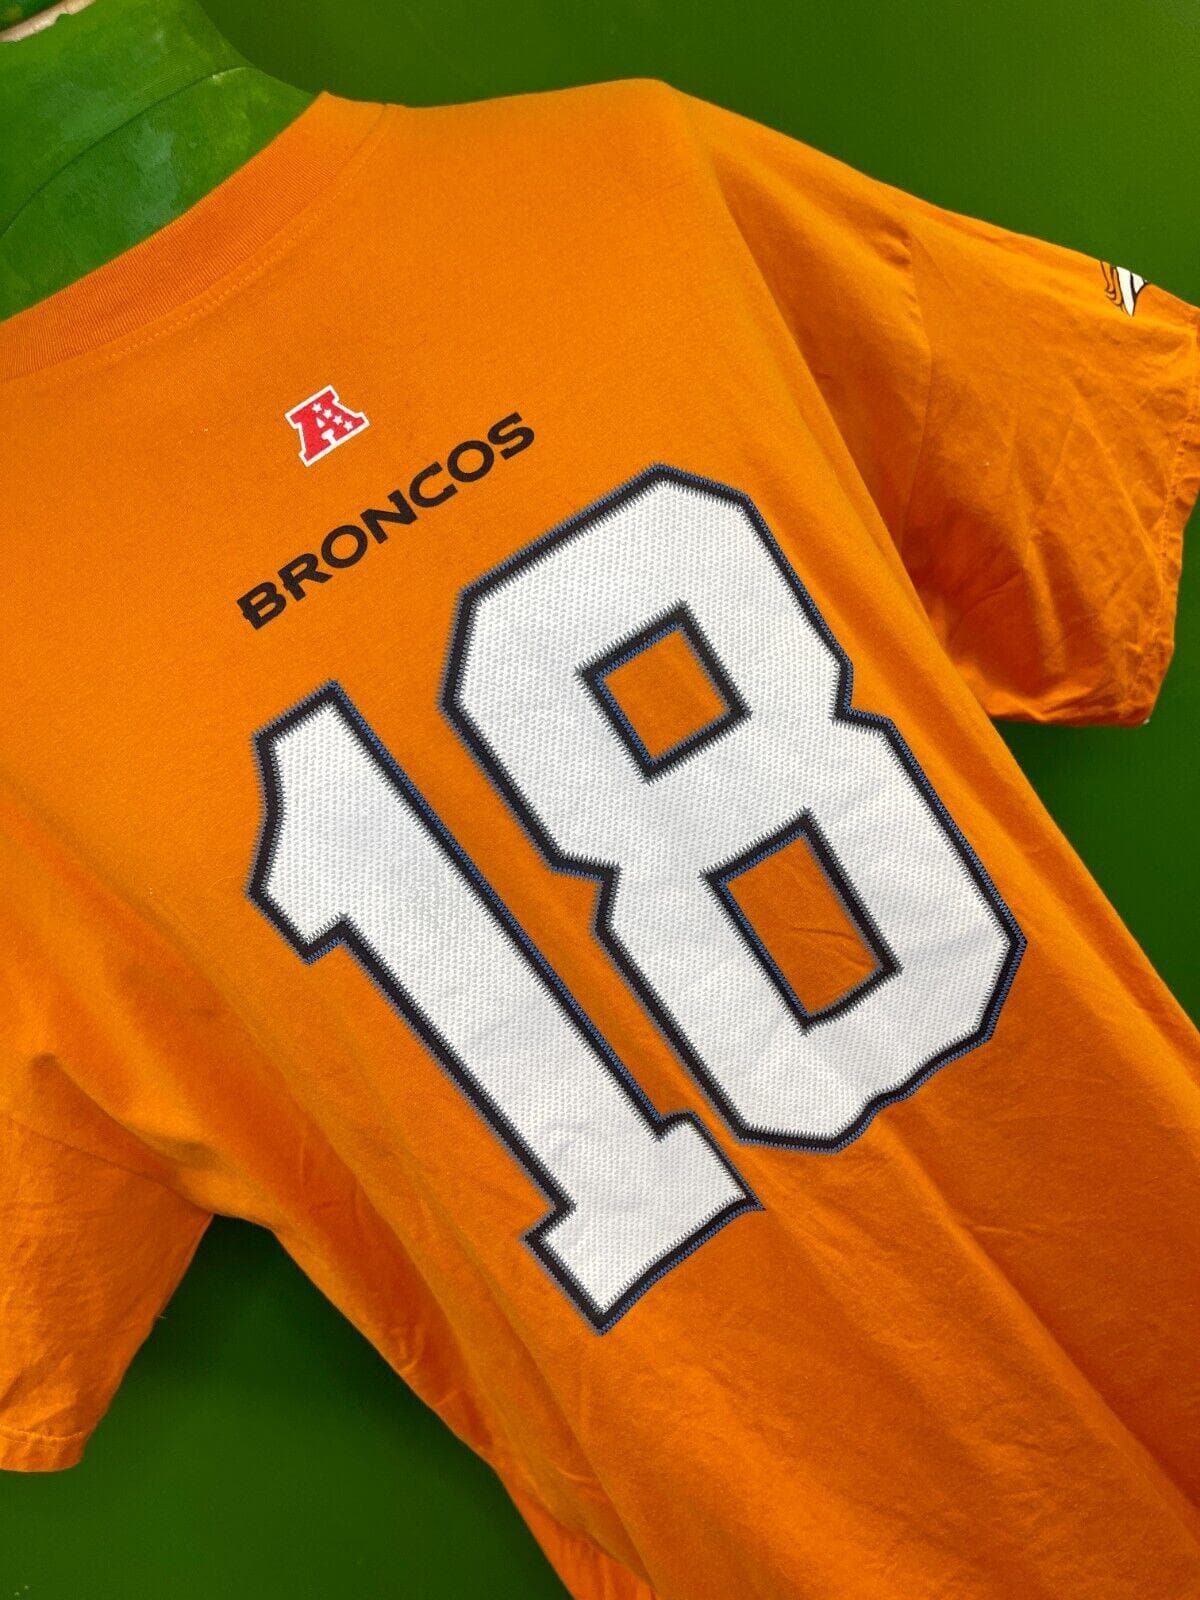 NFL Denver Broncos Manning #18 Majestic T-Shirt Men's 4X-Big NWT 60"